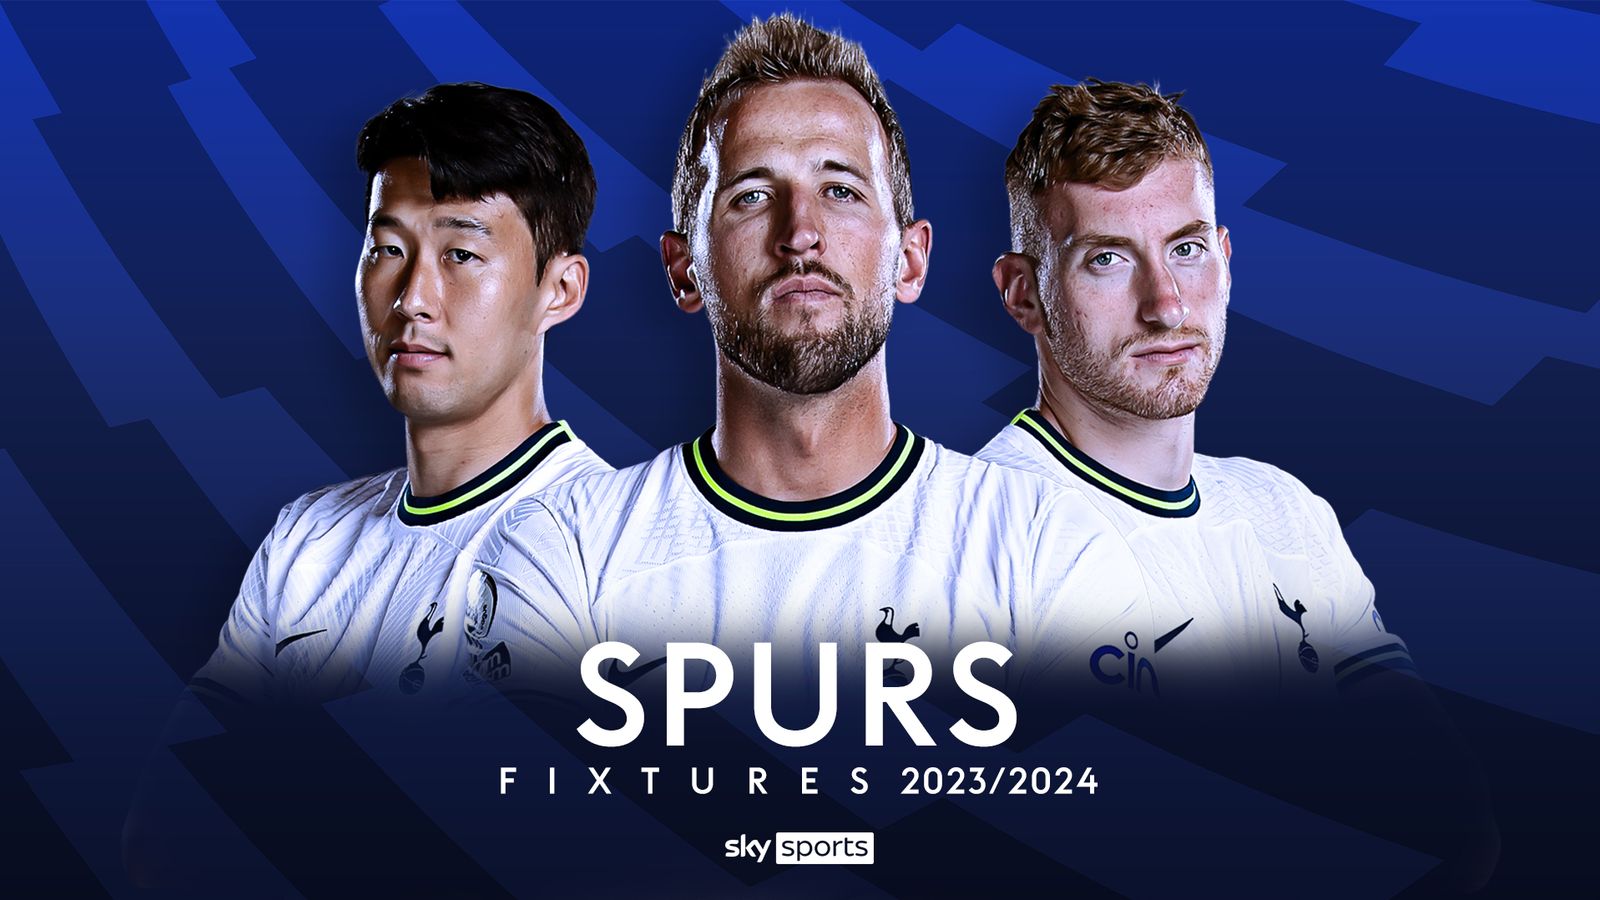 Youth Stadium Tottenham Hotspur Home Shirt 2023/24, Official Spurs Shop